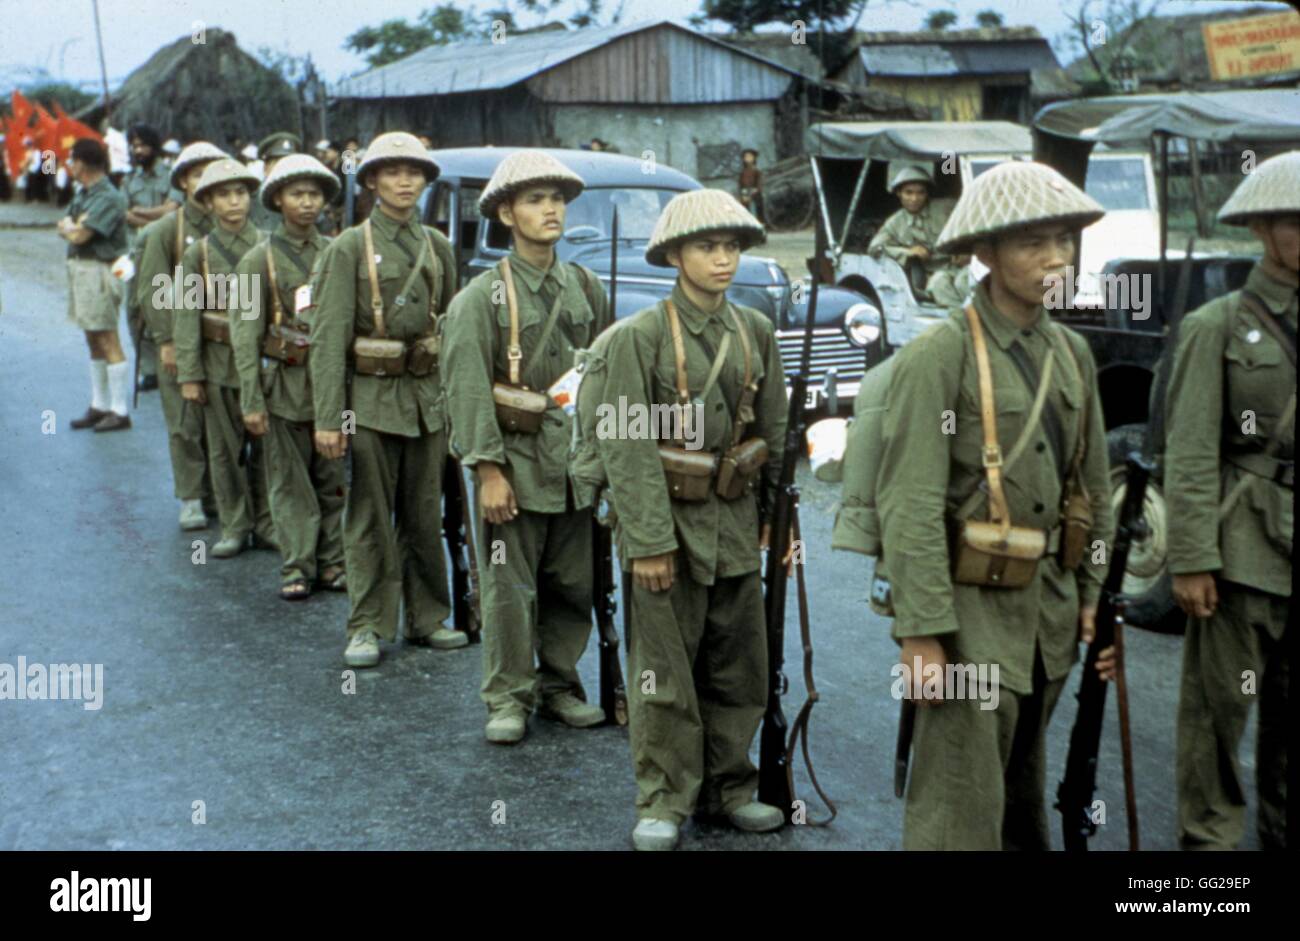 Haiphong. Les troupes communistes attendent les troupes françaises à quitter le Vietnam 1954-1955 - guerre d'indochine Archives nationales. Washington Banque D'Images